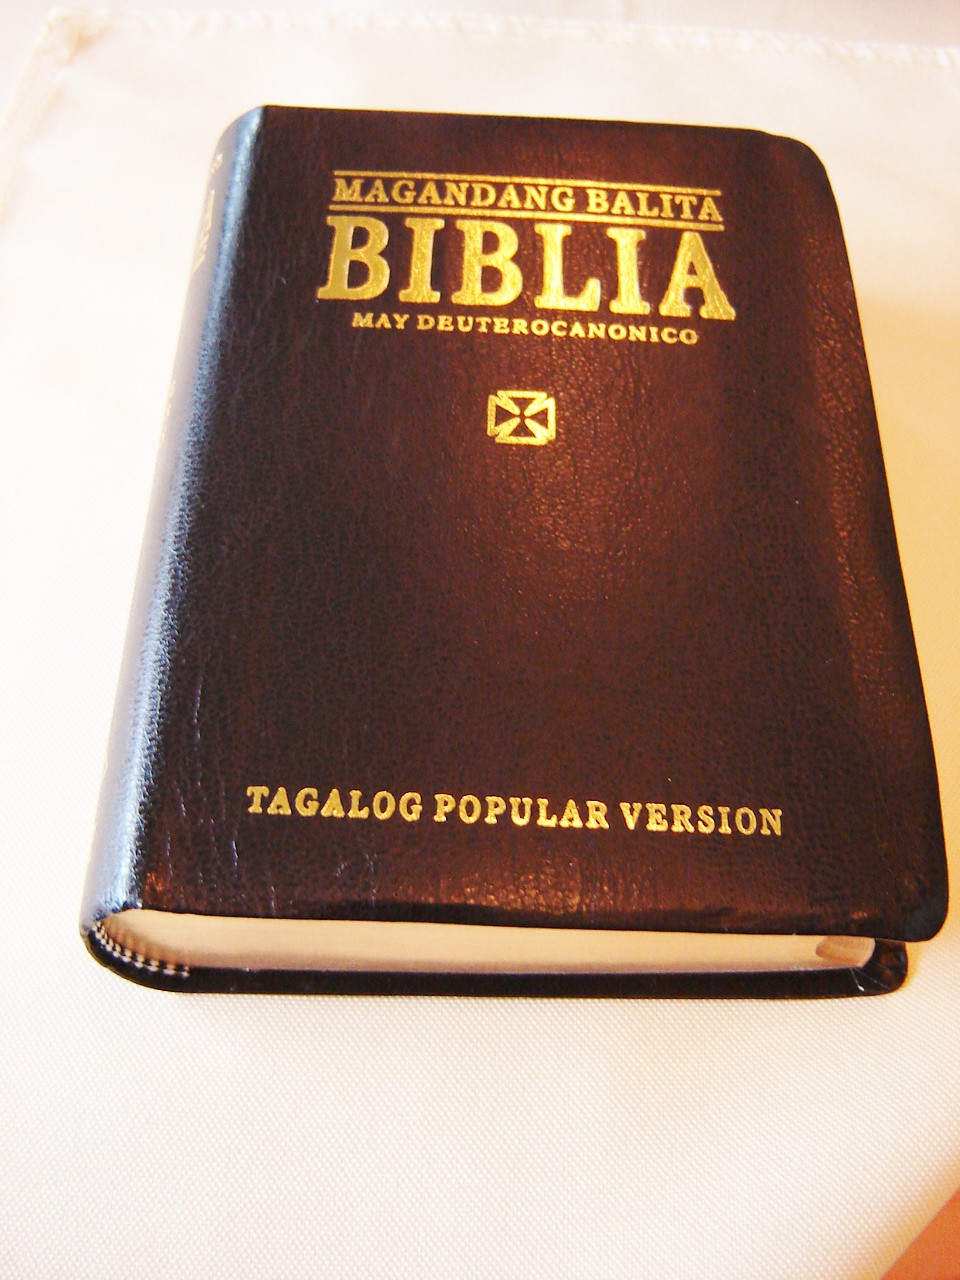 tagalog-topical-study-bible-tagalog-popular-version-bagong-tipan-ng-magandang-balita-biblia